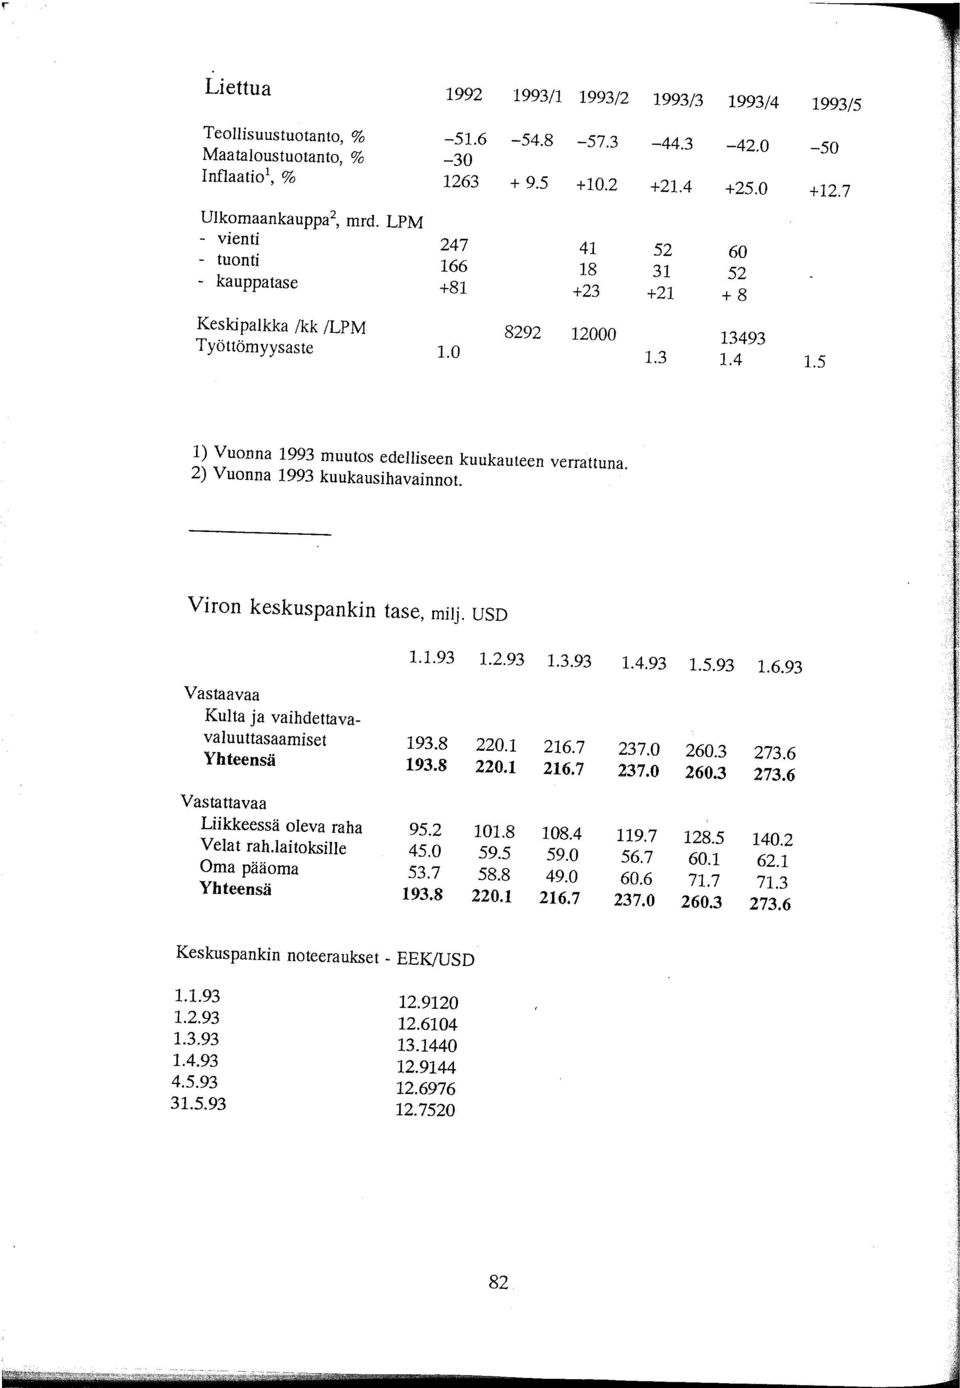 2) Vuonna 1993 kuukausihavainnot. Viron keskuspankin tase, milj. USD 1.1.93 1.2.93 1.3.93 1.4.93 1.5.93 1.6.93 Vastaavaa Kulta ja vaihdettavavaluuttasaamiset 193.8 220.1 216.7 237.0 260.3 273.